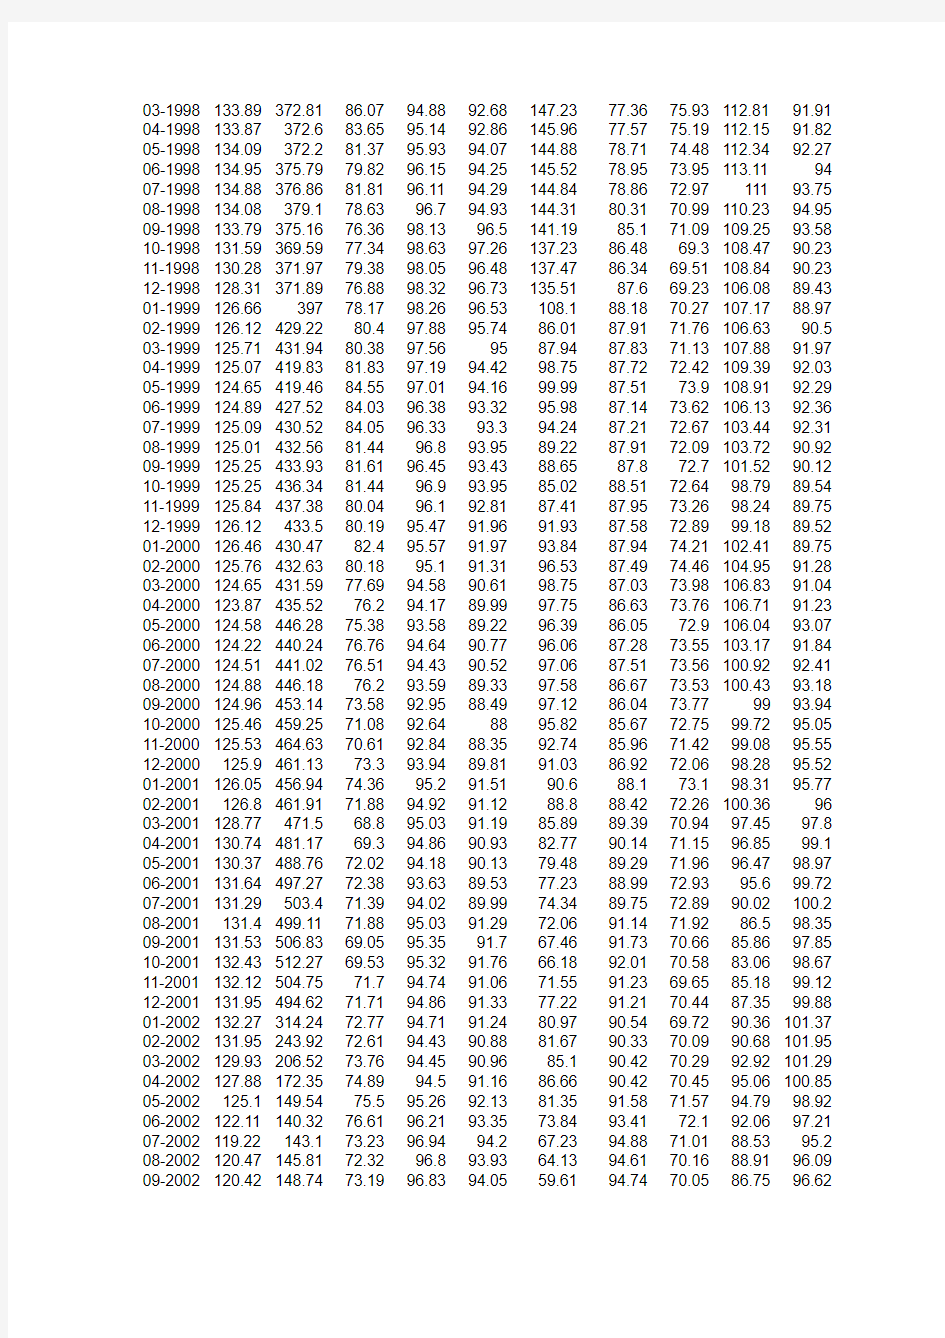 人民币实际有效汇率数据 1994-2013